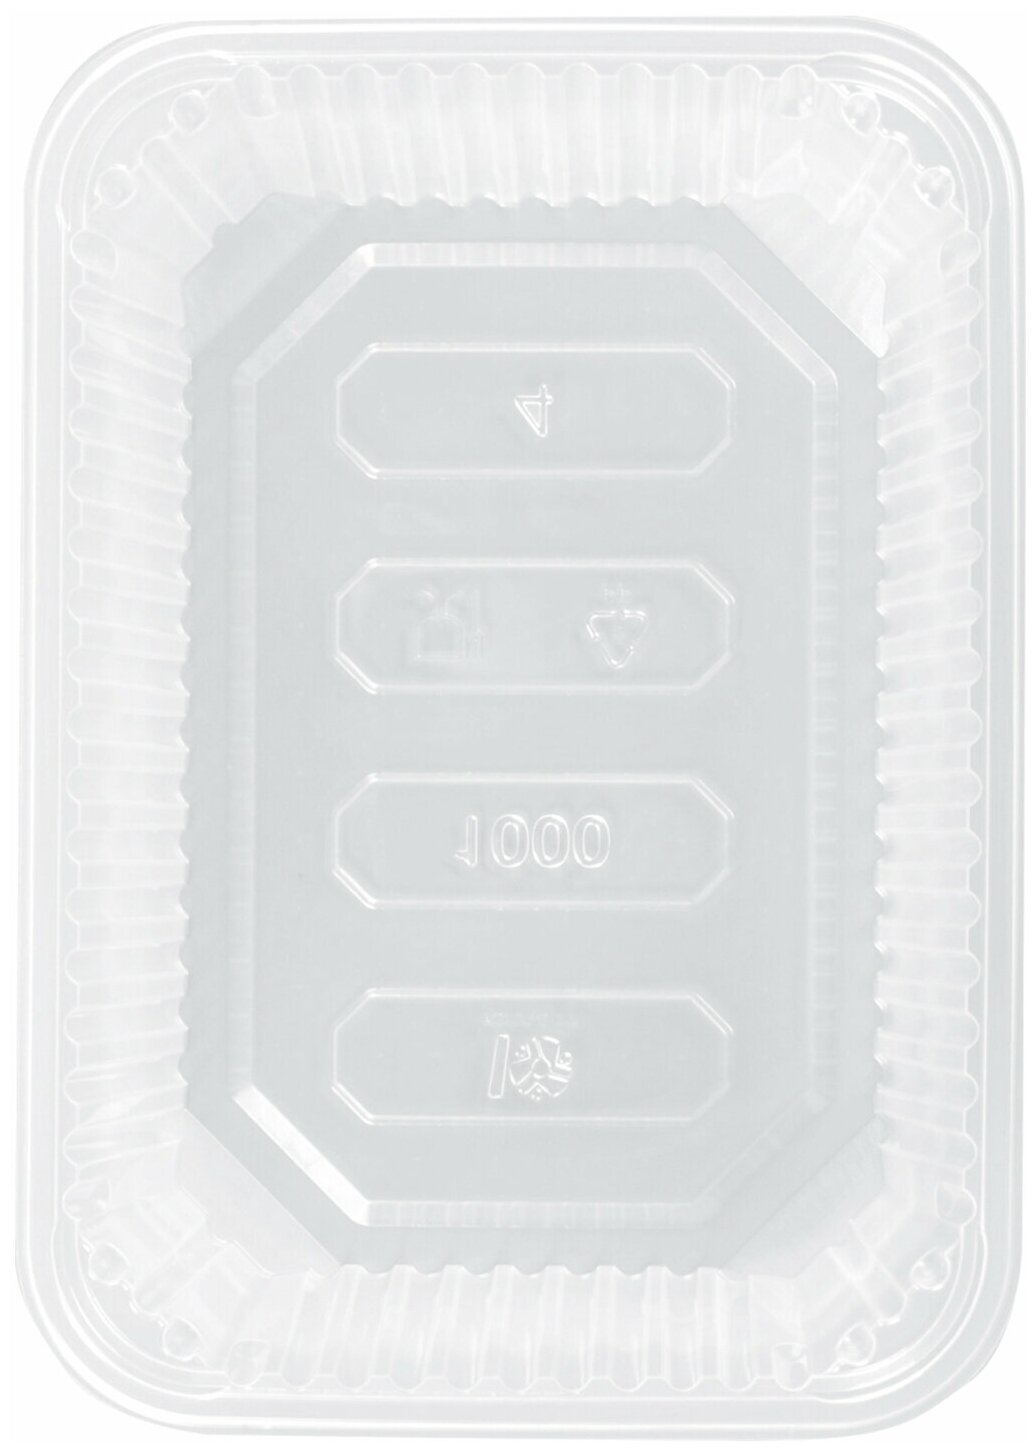 Одноразовый контейнер 1000 мл, комплект 100 шт., без крышки, 186×132 мм, прозрачные, ПП, юпласт - фотография № 3